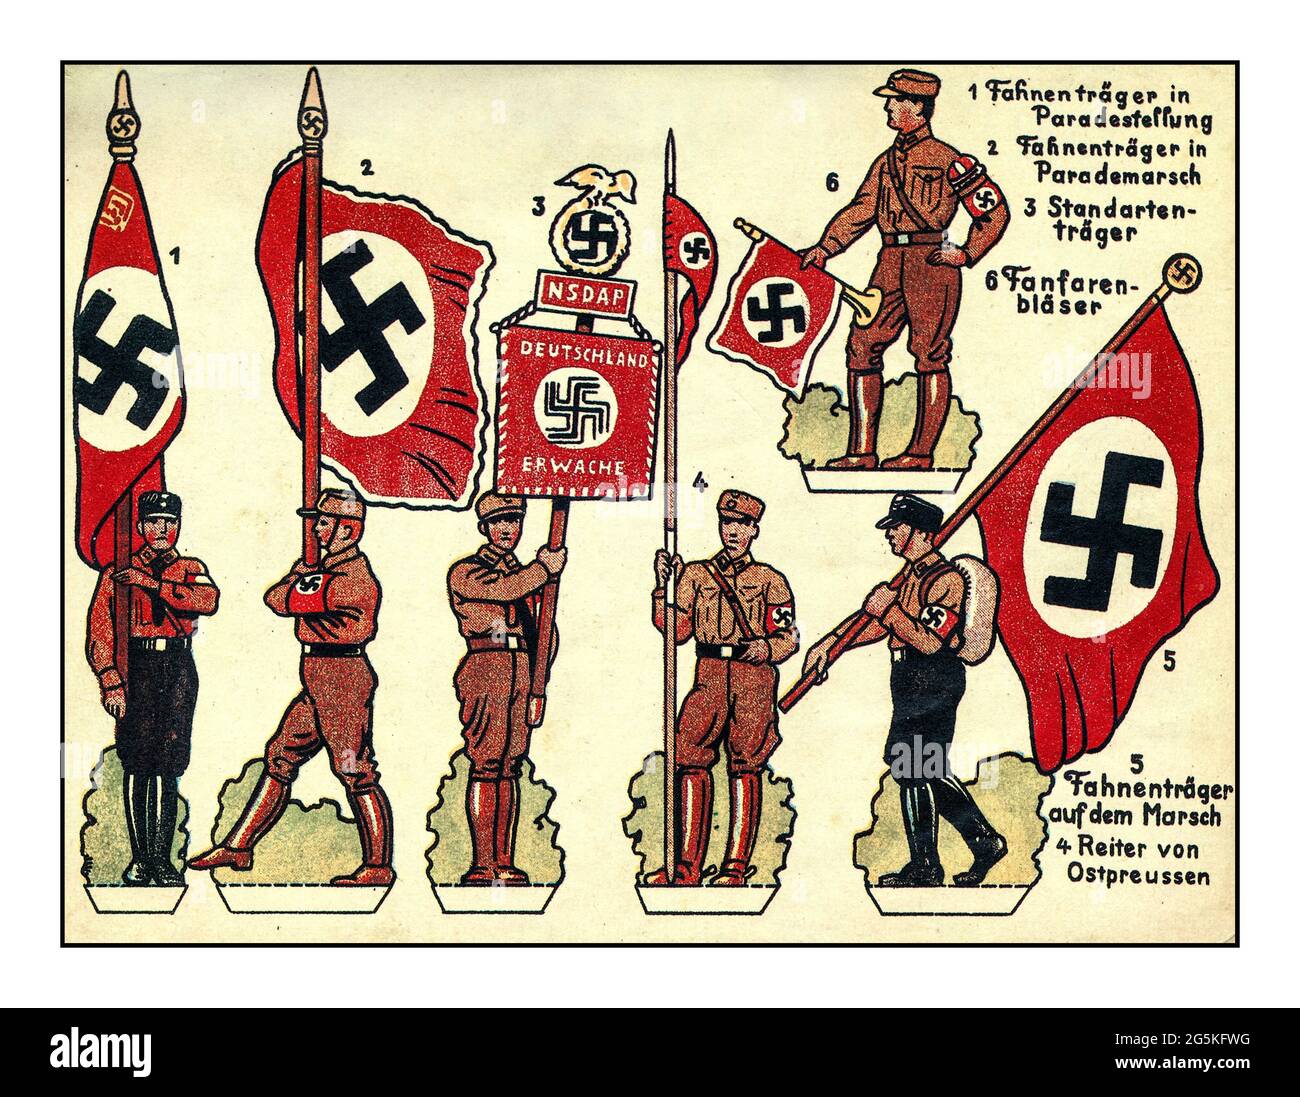 Vintage Nazi-Propaganda Ausschnittpapierfiguren für die verschiedenen Uniformen und Standardträger der NSDAP mit Hakenkreuzflaggen Nazi-Partei Familienpropaganda im Nazi-Deutschland der 1930er Jahre Stockfoto